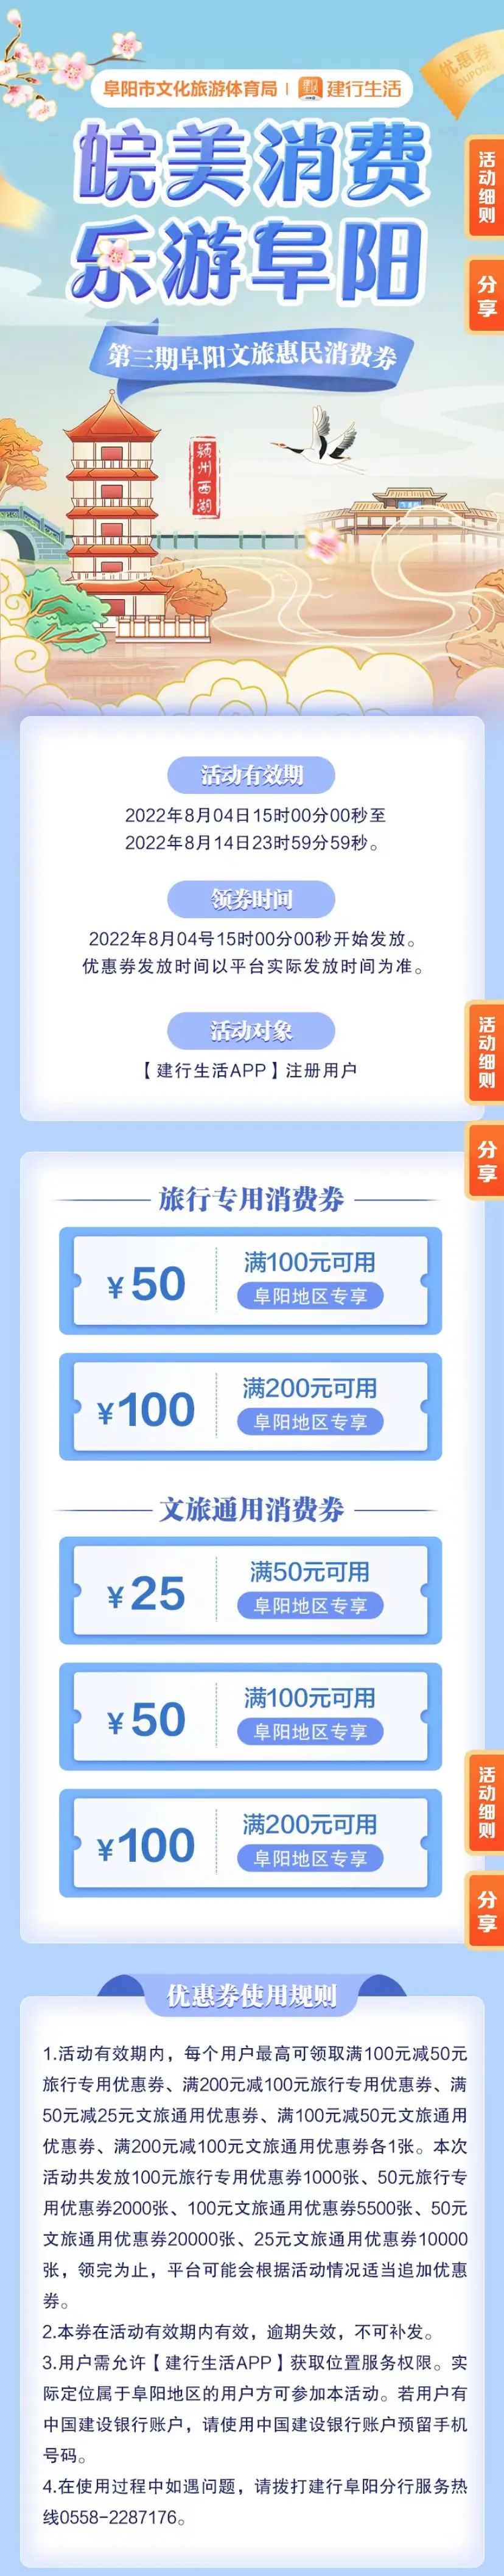 2022第三期阜阳文旅消费券今天（8月4日）下午3点发放